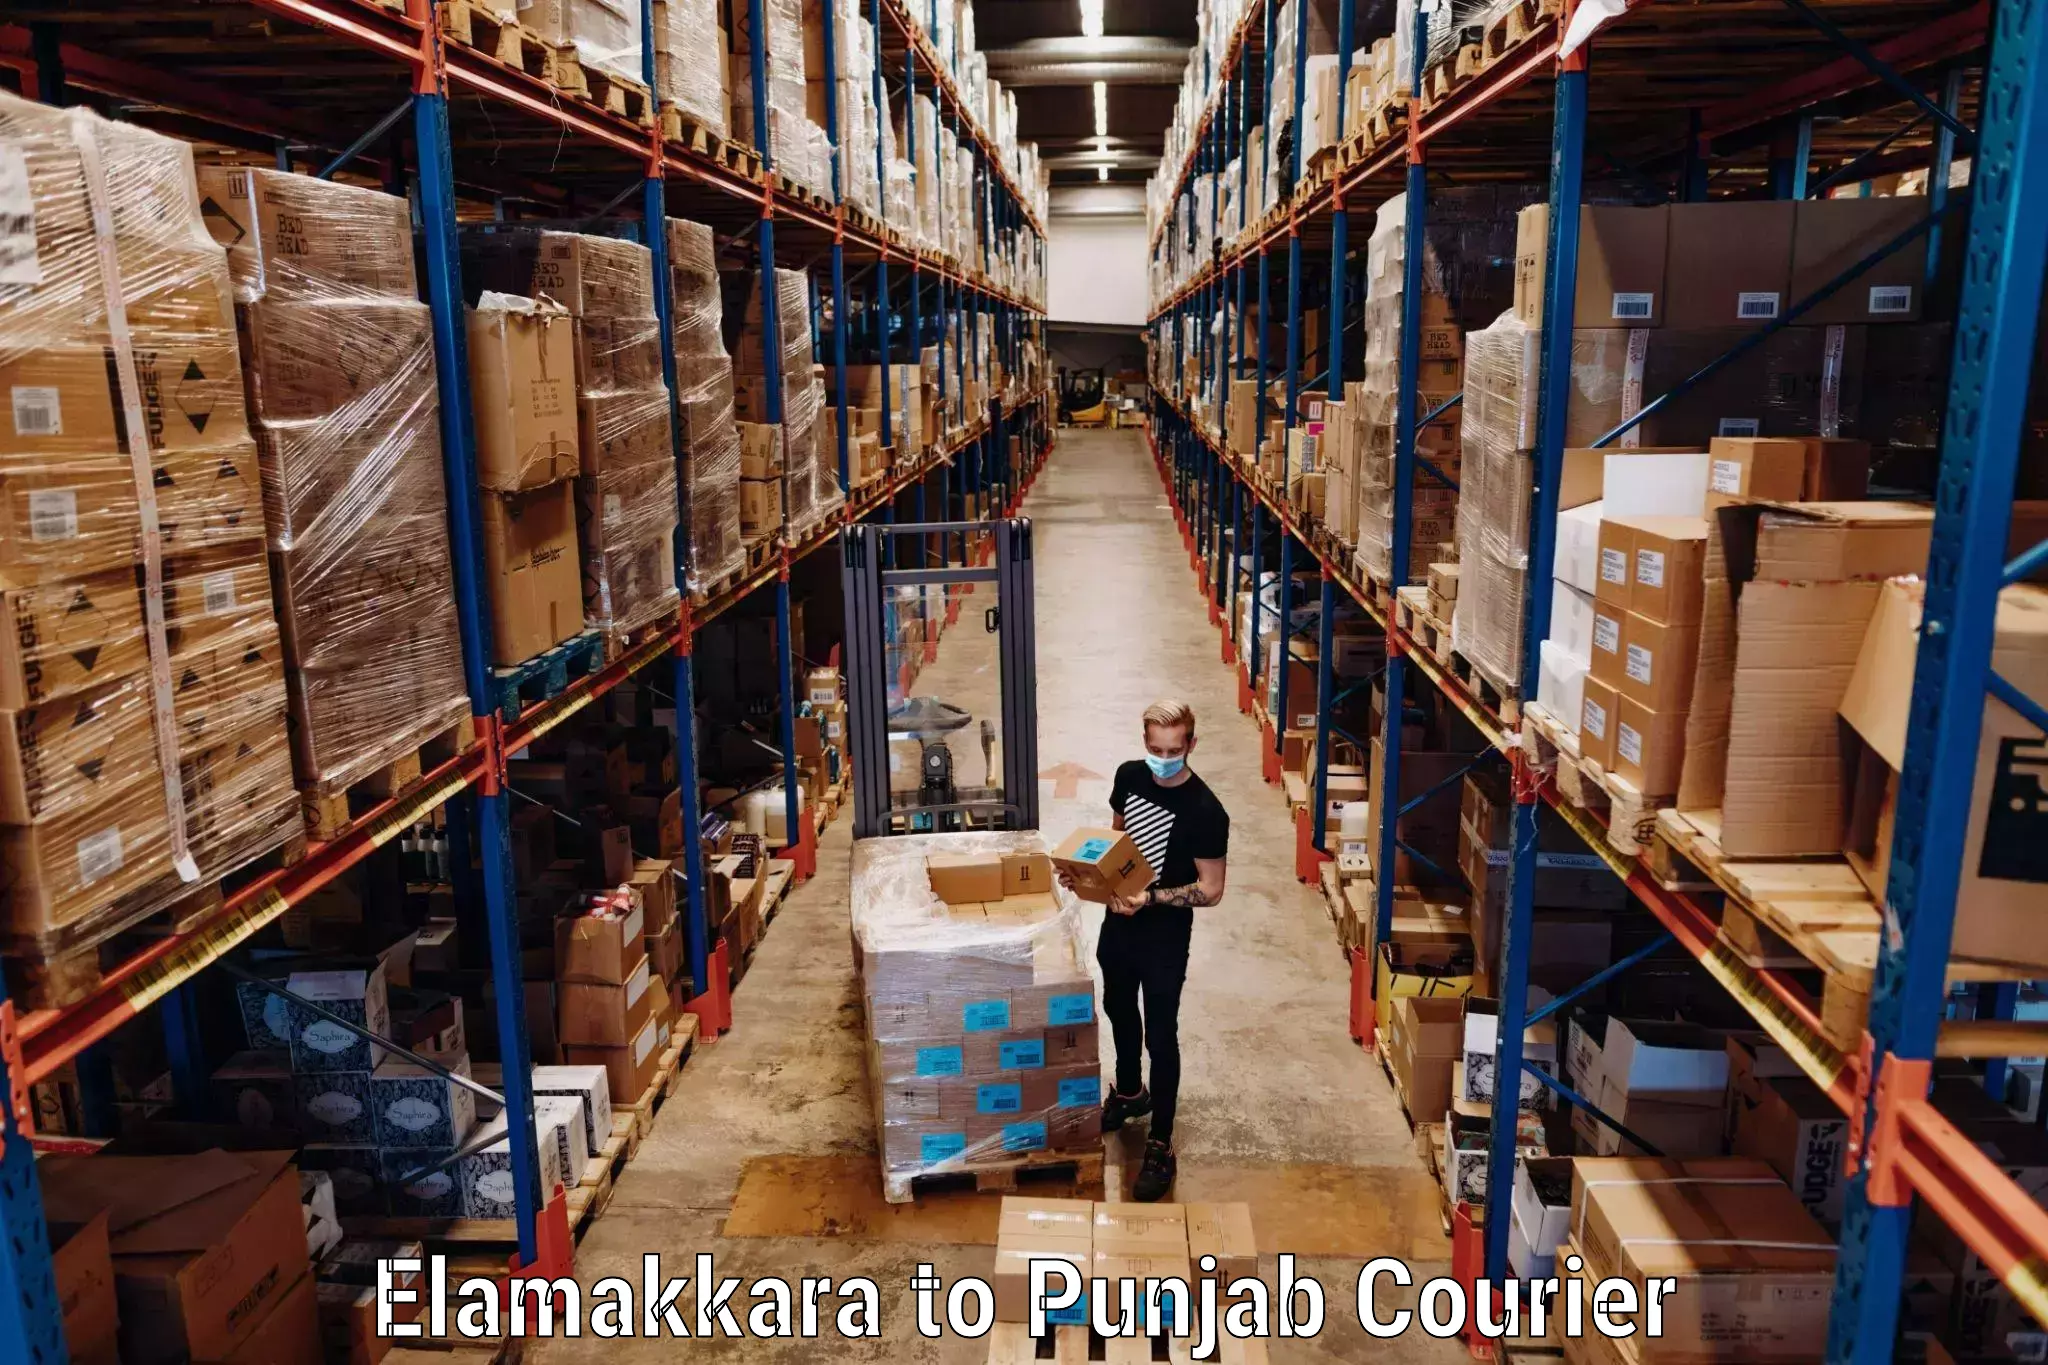 Luggage transport service Elamakkara to Abohar